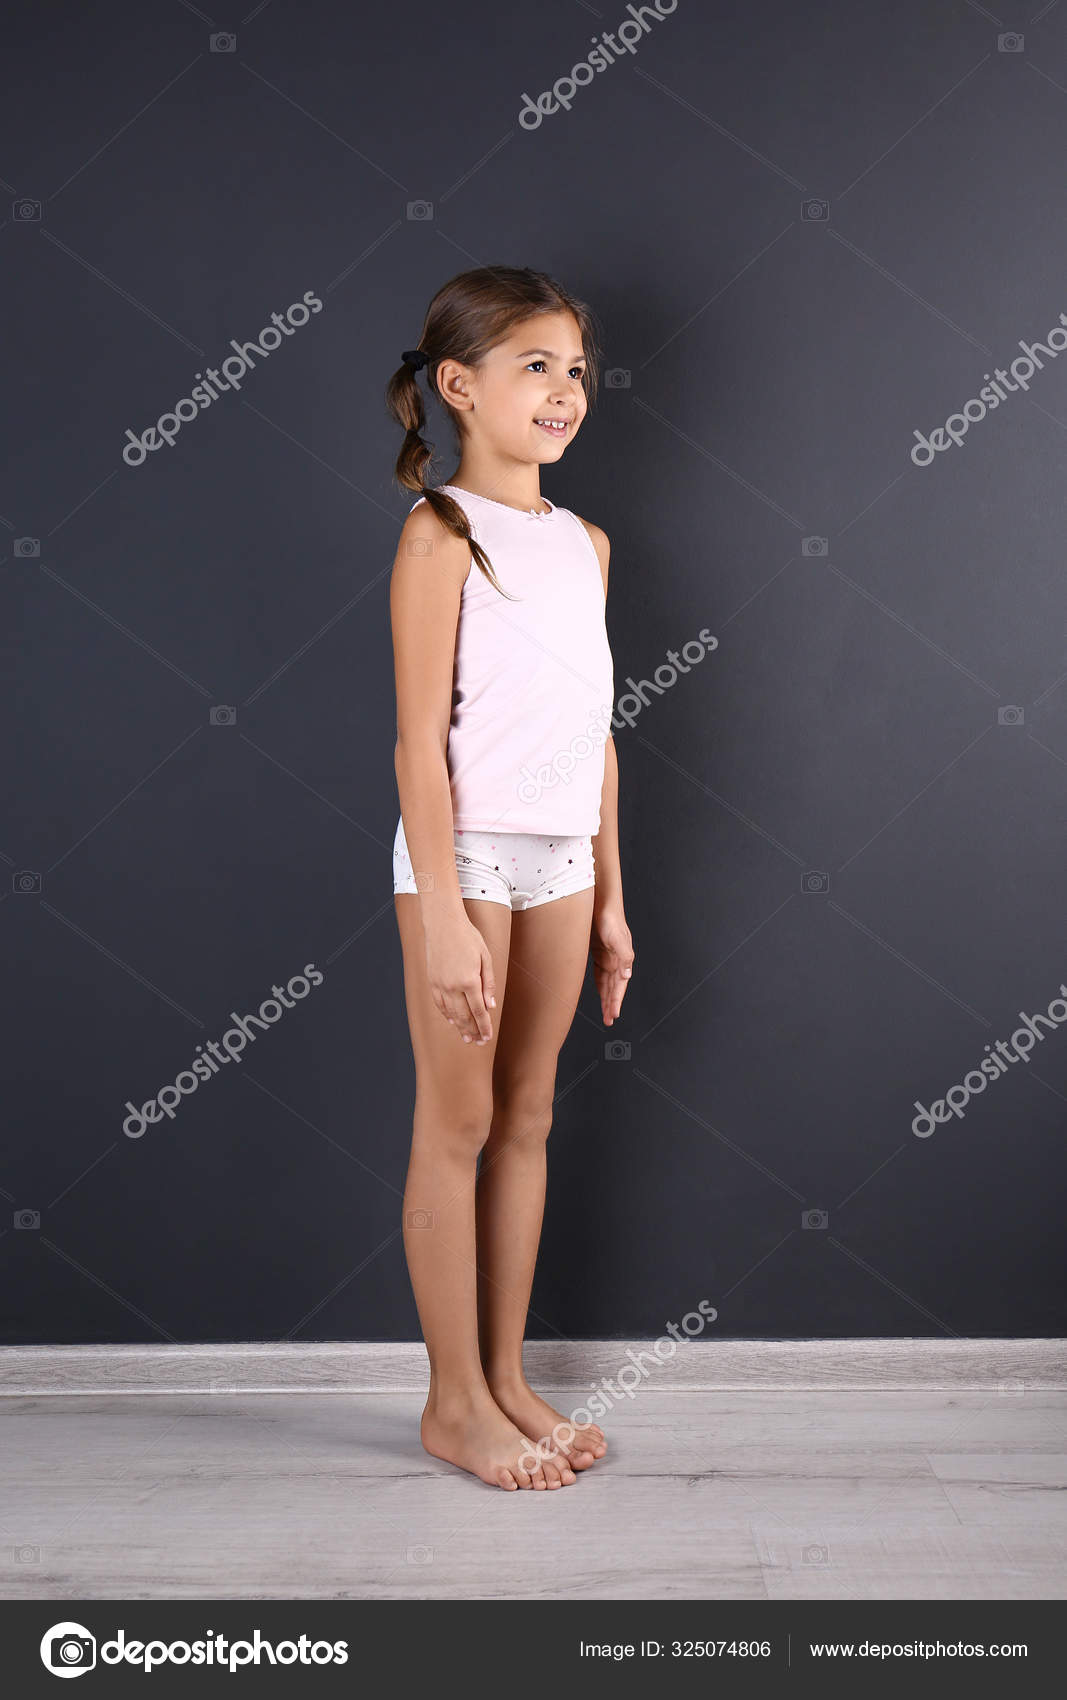 Cute little girl in underwear near dark wall Stock Photo by